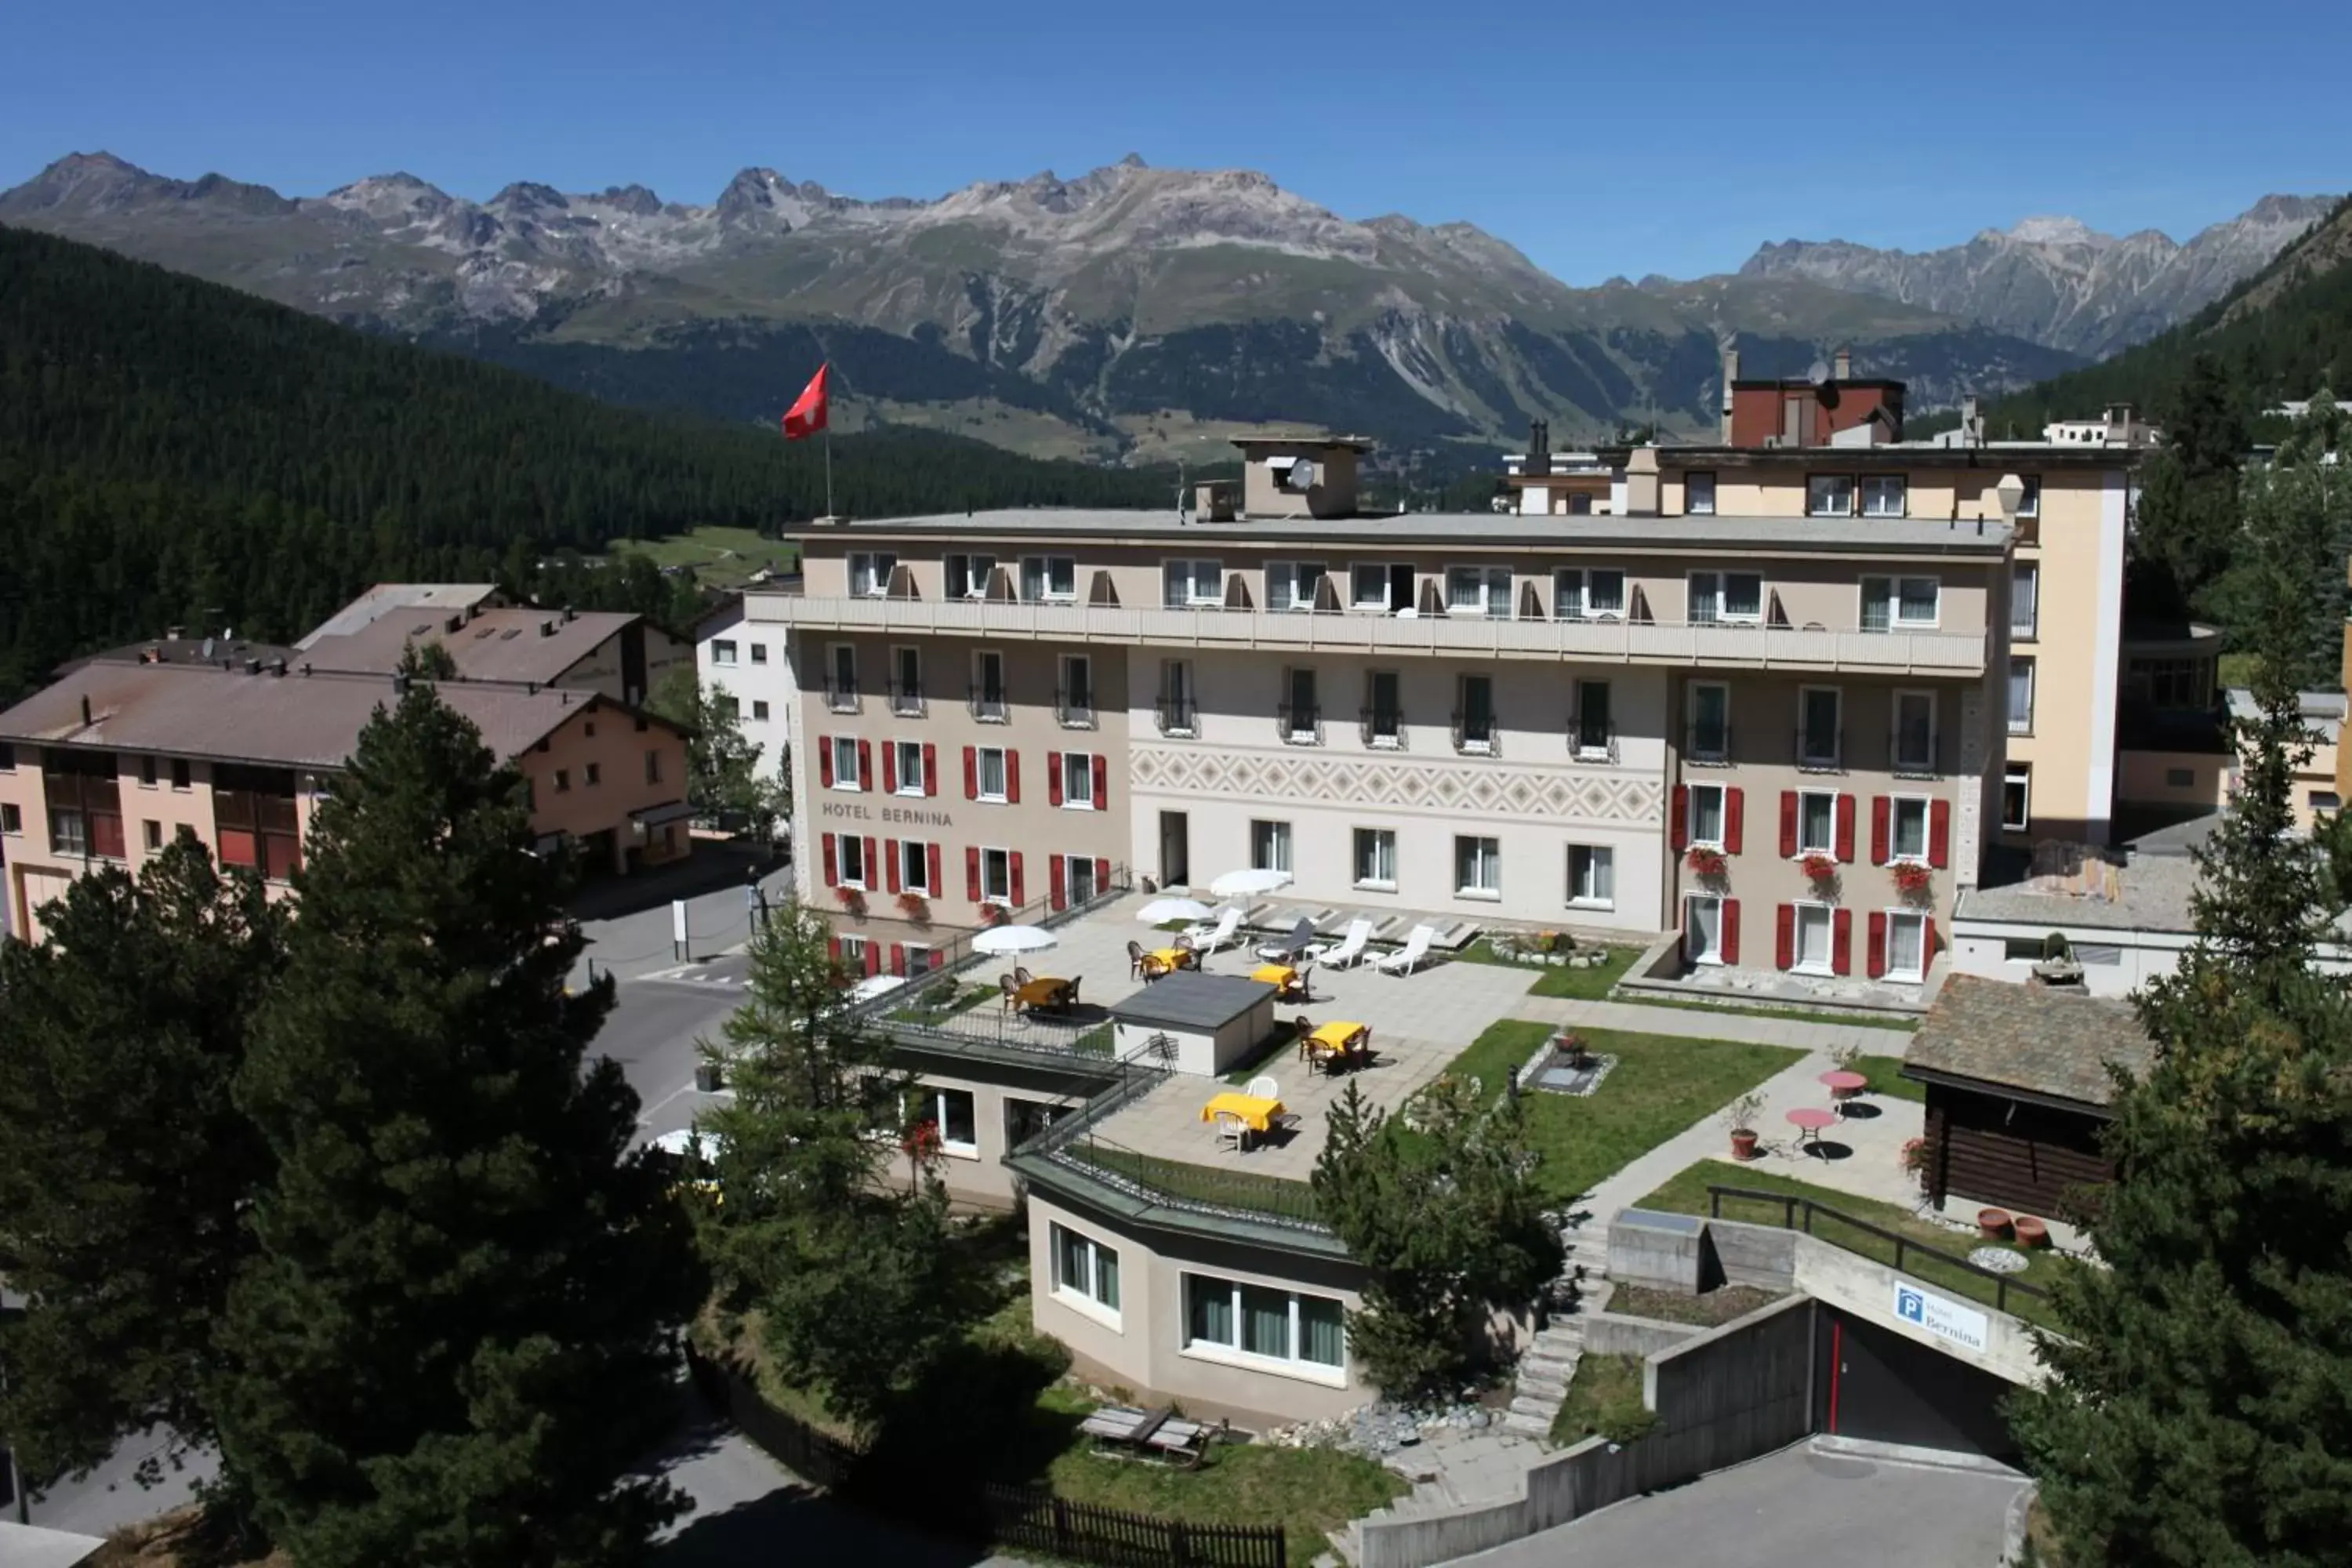 Property building in Hotel Bernina